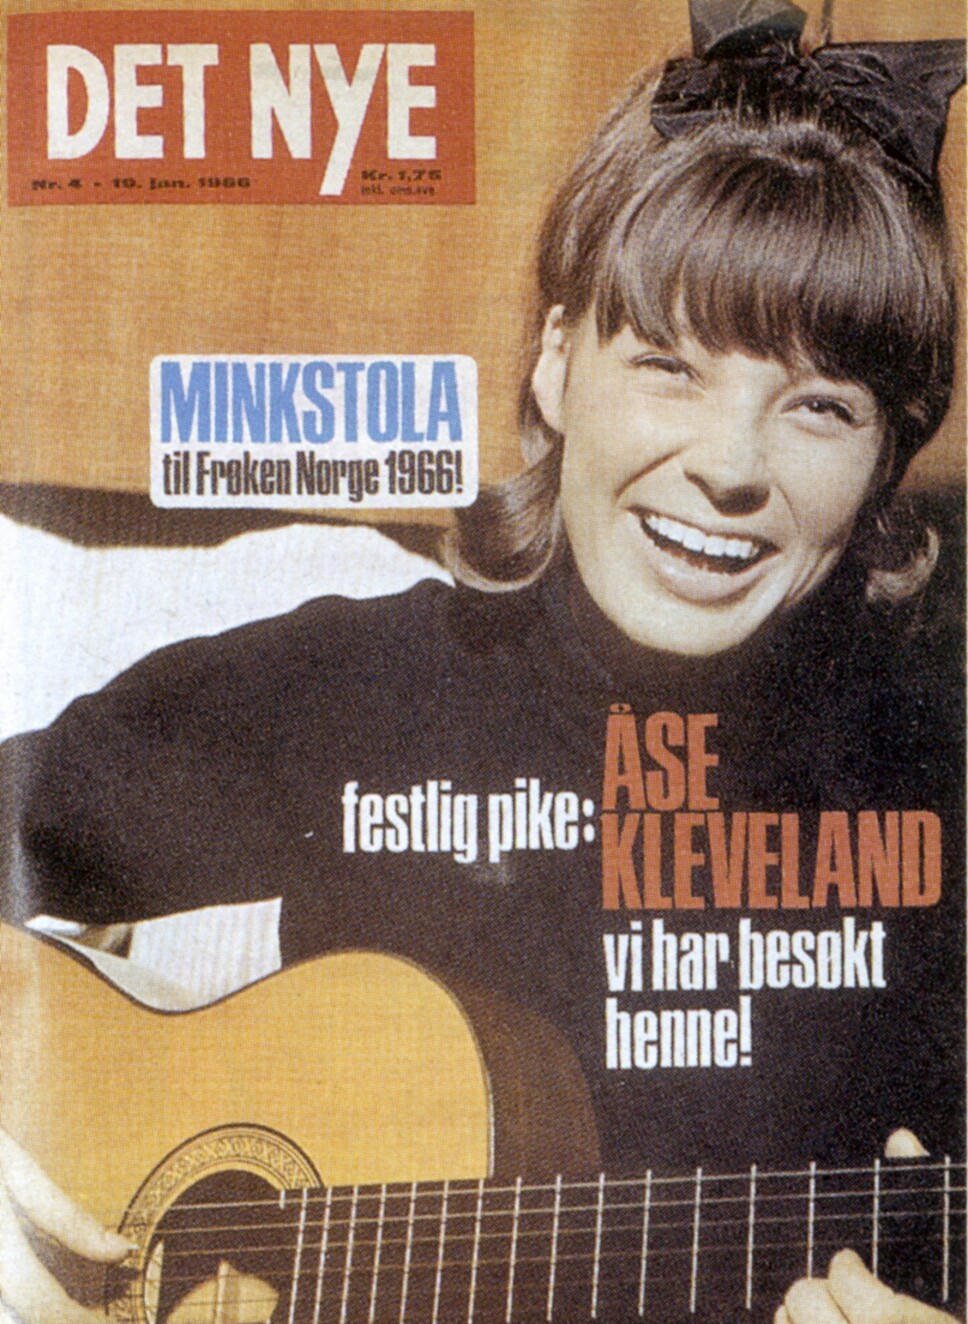 1966: Åse Kleveland på forsiden av Det Nye i 1966.